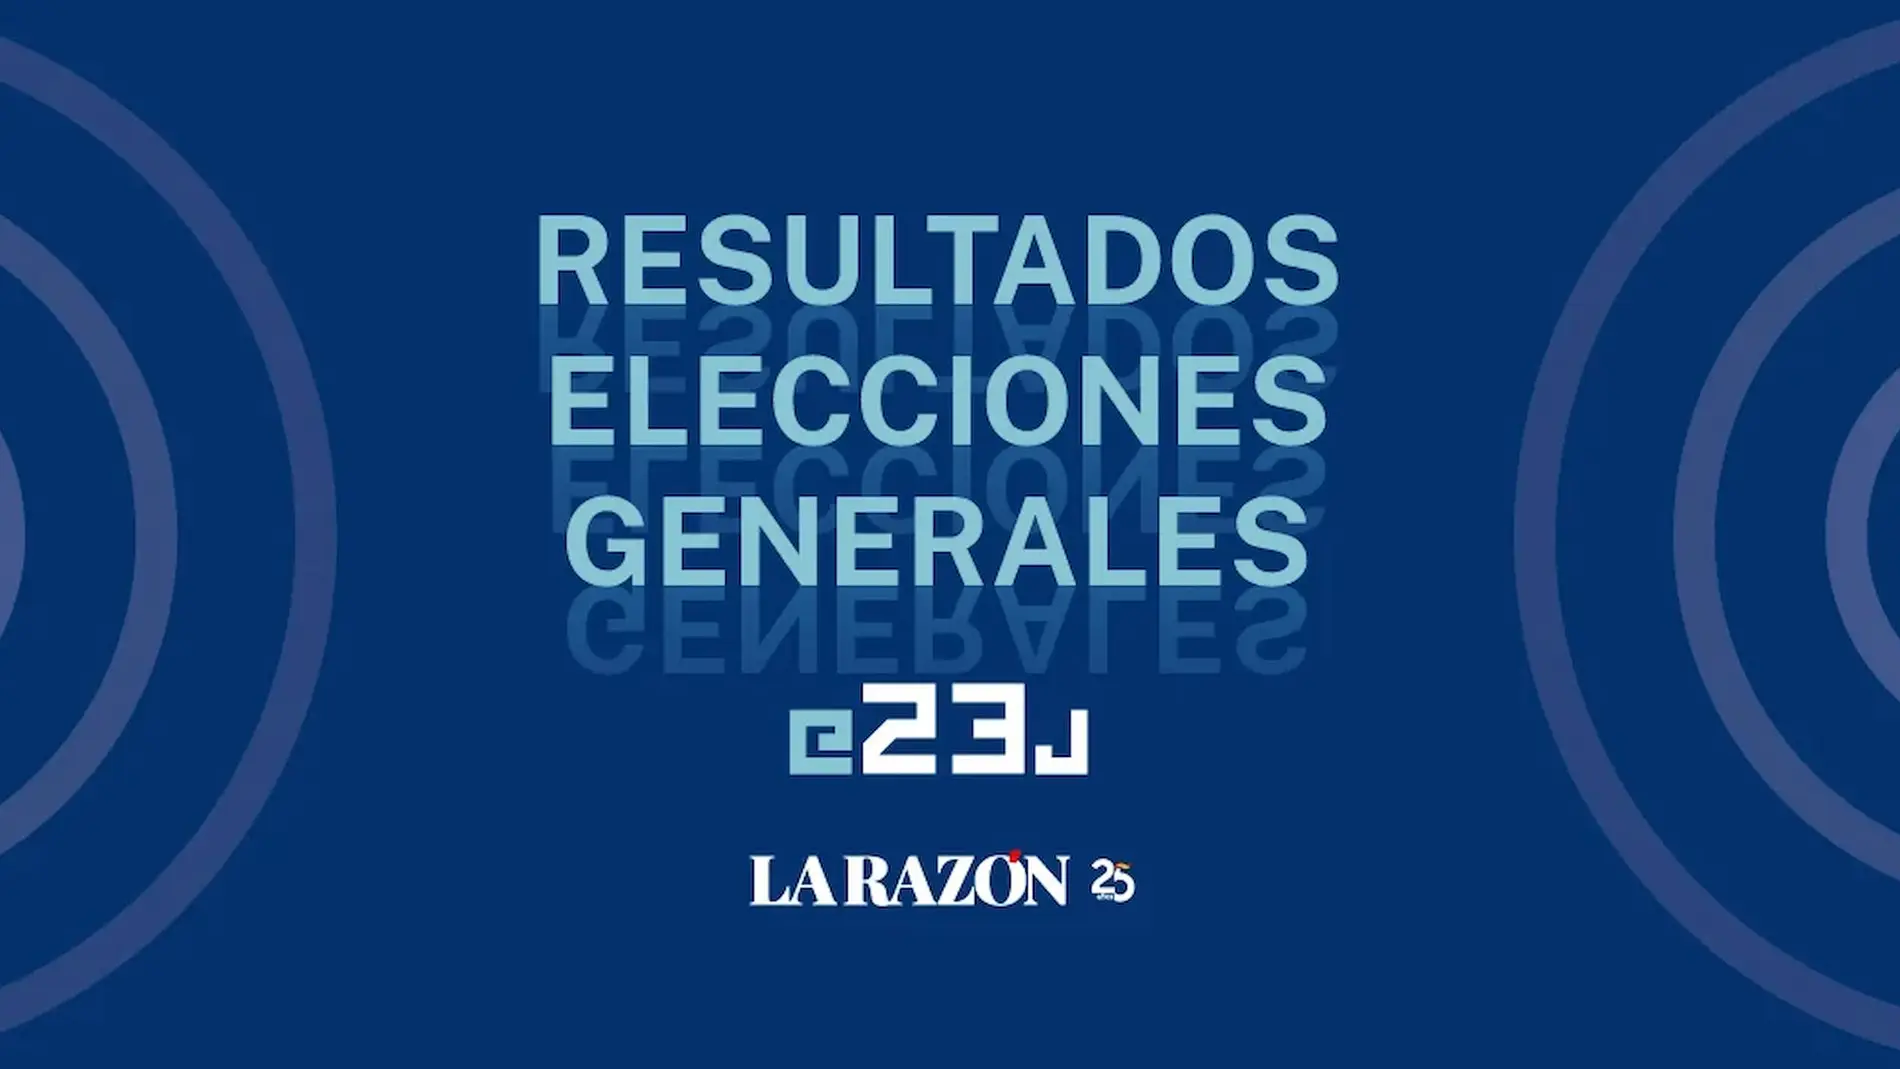 Resultados elecciones generales 23J